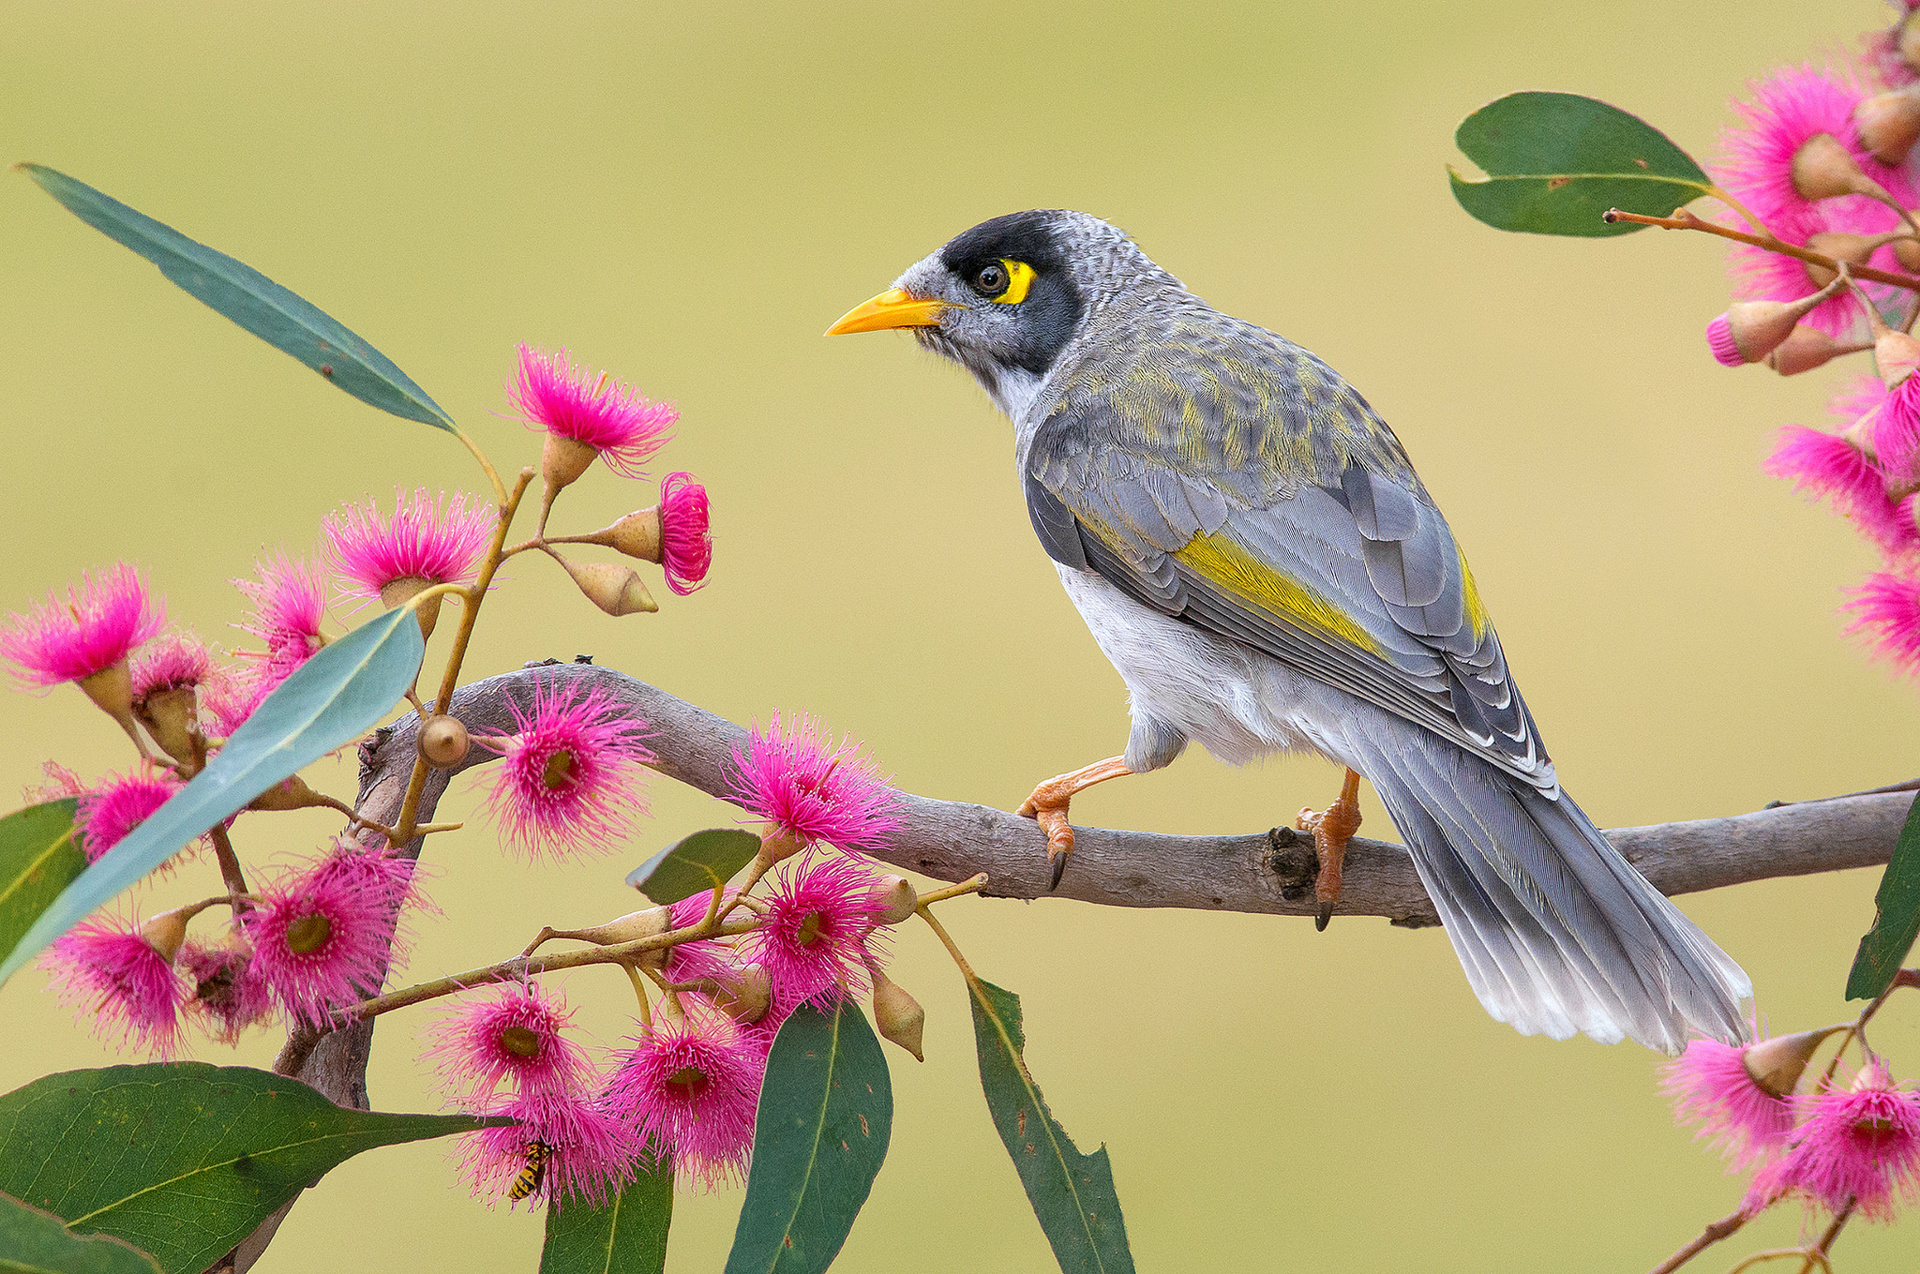 Tải 25 hình ảnh các loài chim đẹp nhất thế giới - [Kích thước hình ảnh: 1920x1274 px]